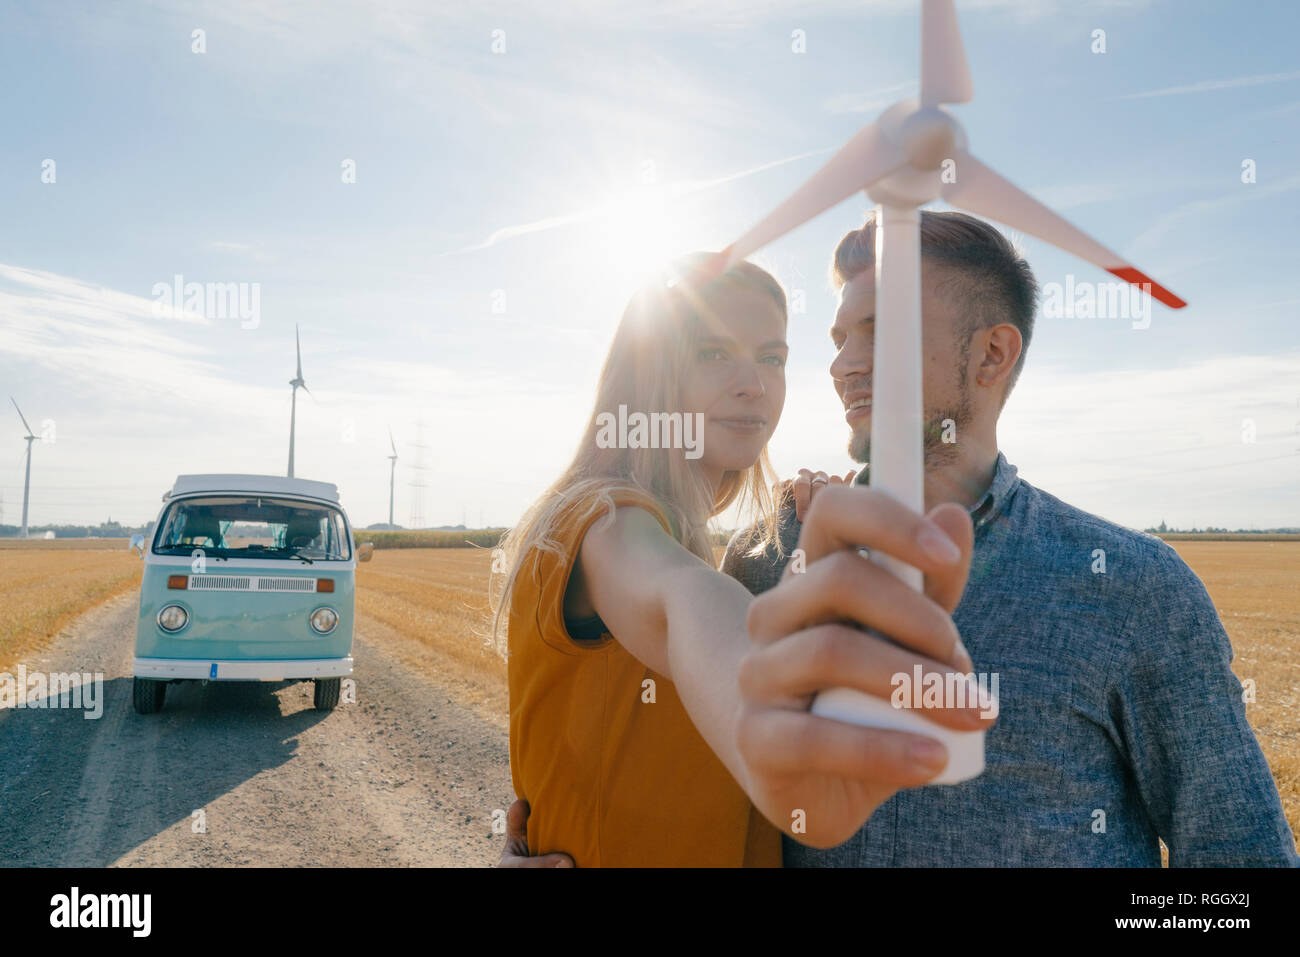 Junges Paar an Wohnmobil in ländlichen Landschaft Holding wind turbine Modell Stockfoto